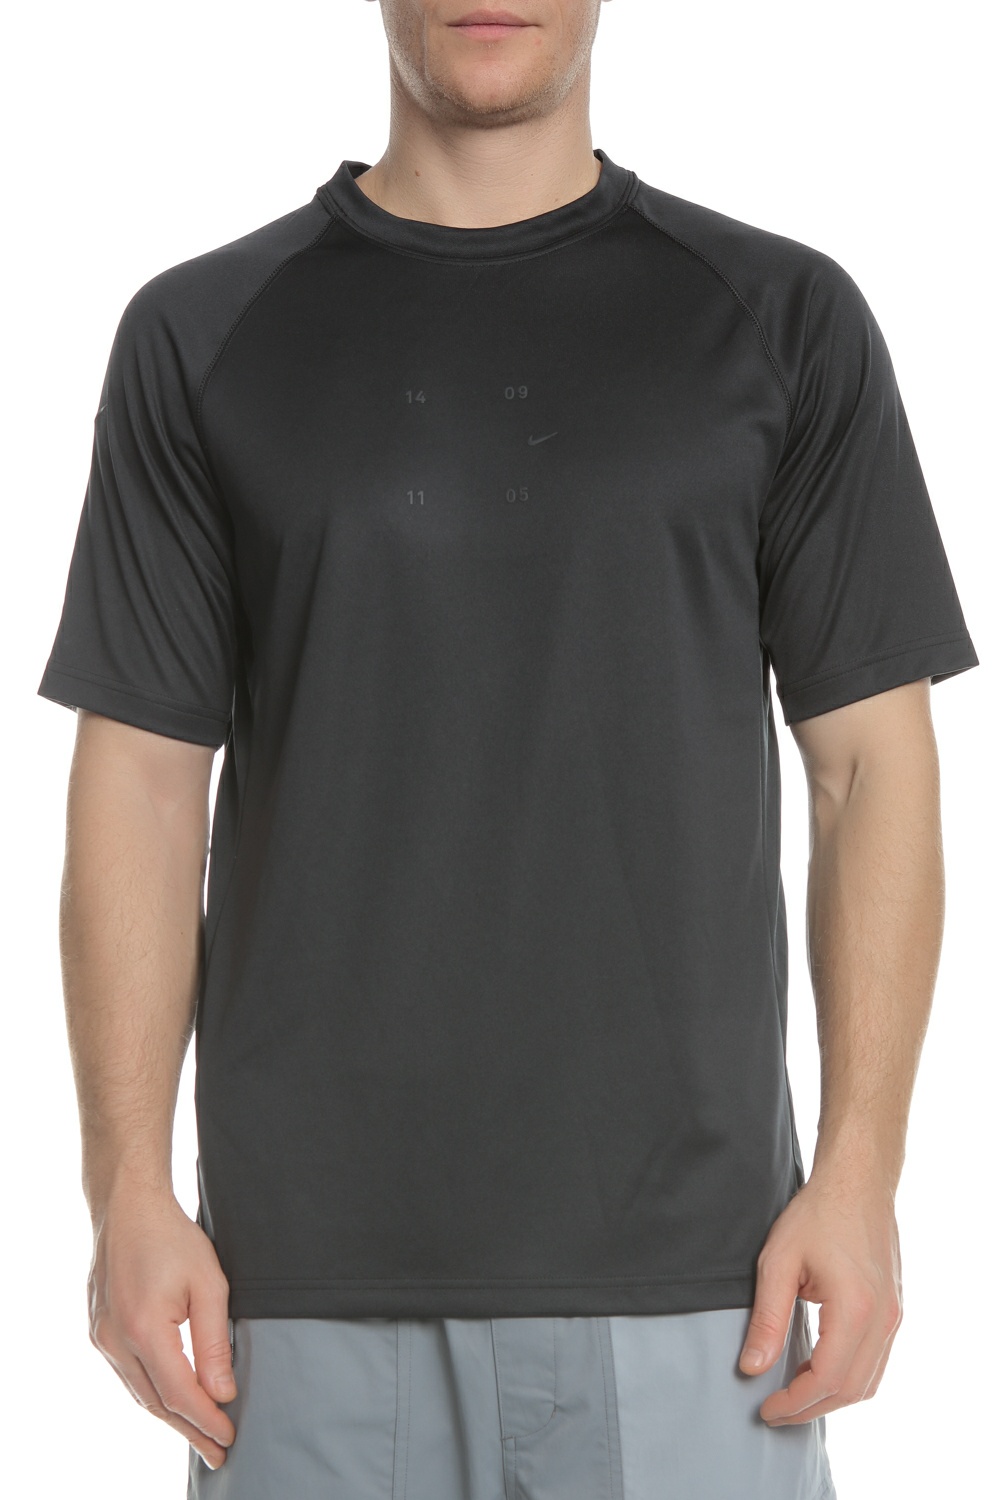 Ανδρικά/Ρούχα/Αθλητικά/T-shirt NIKE - Ανδρική μπλούζα NIKE TCH PCK μαύρη